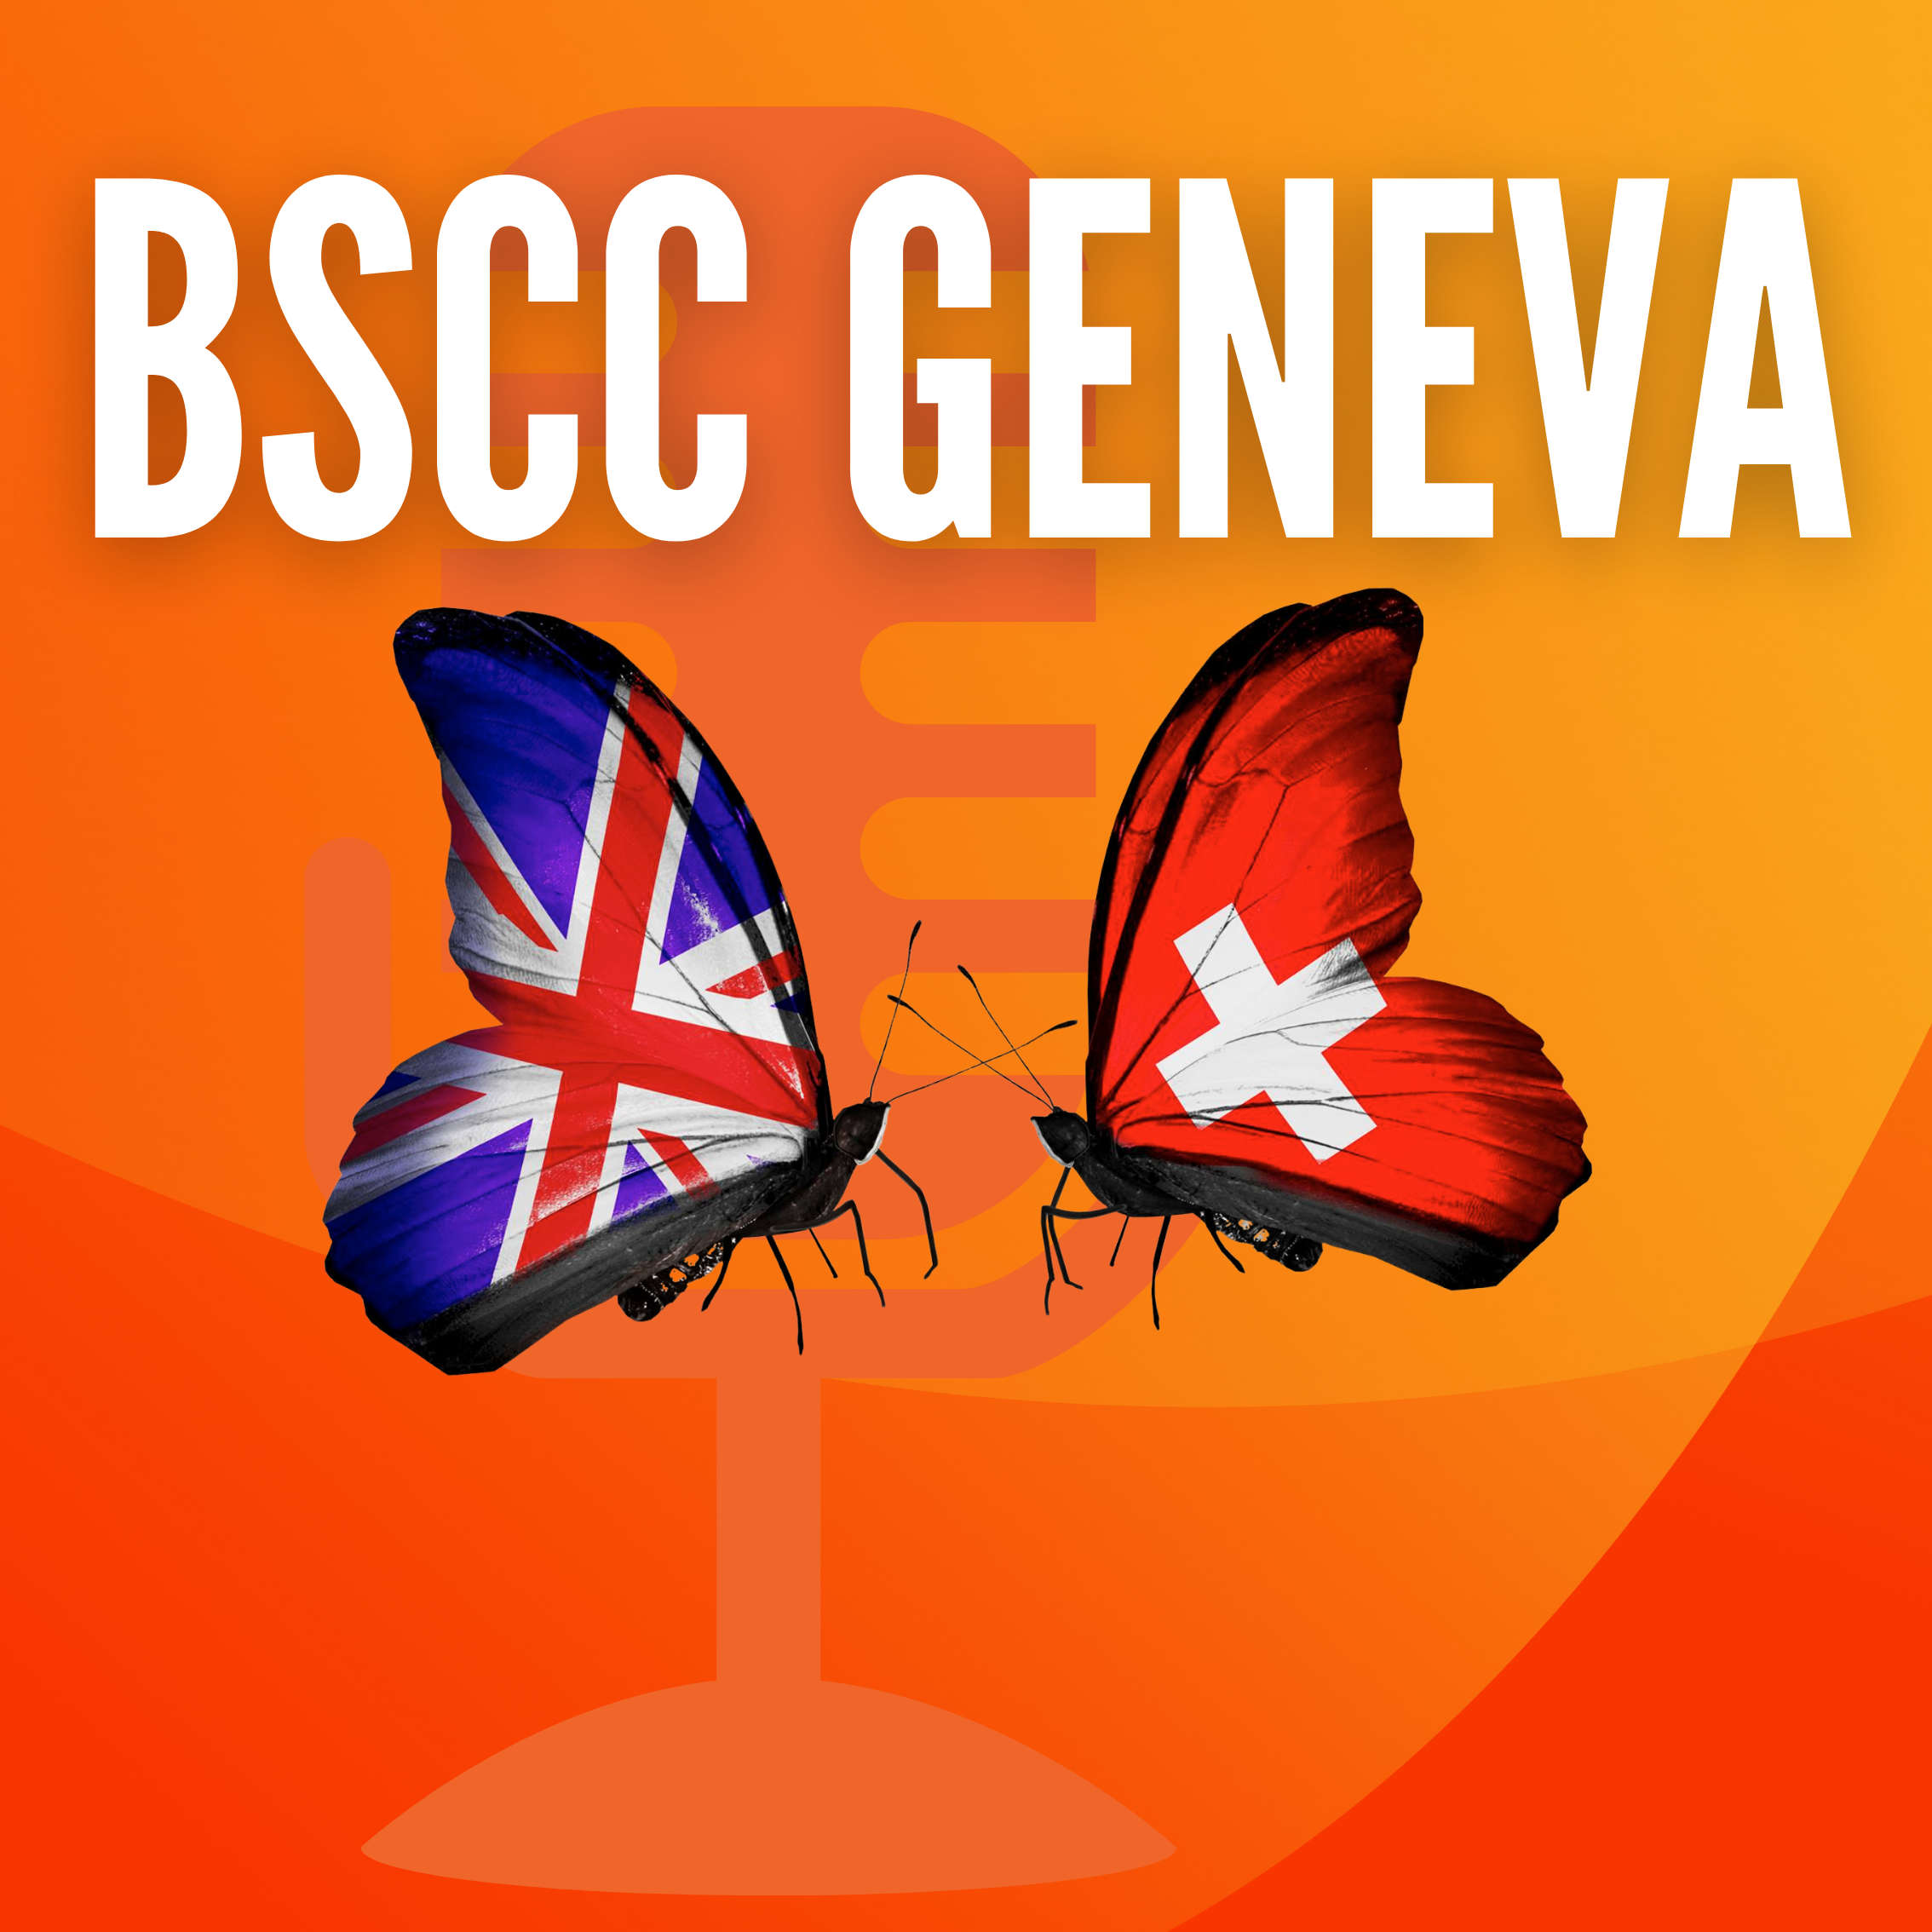 BSCC - Geneva